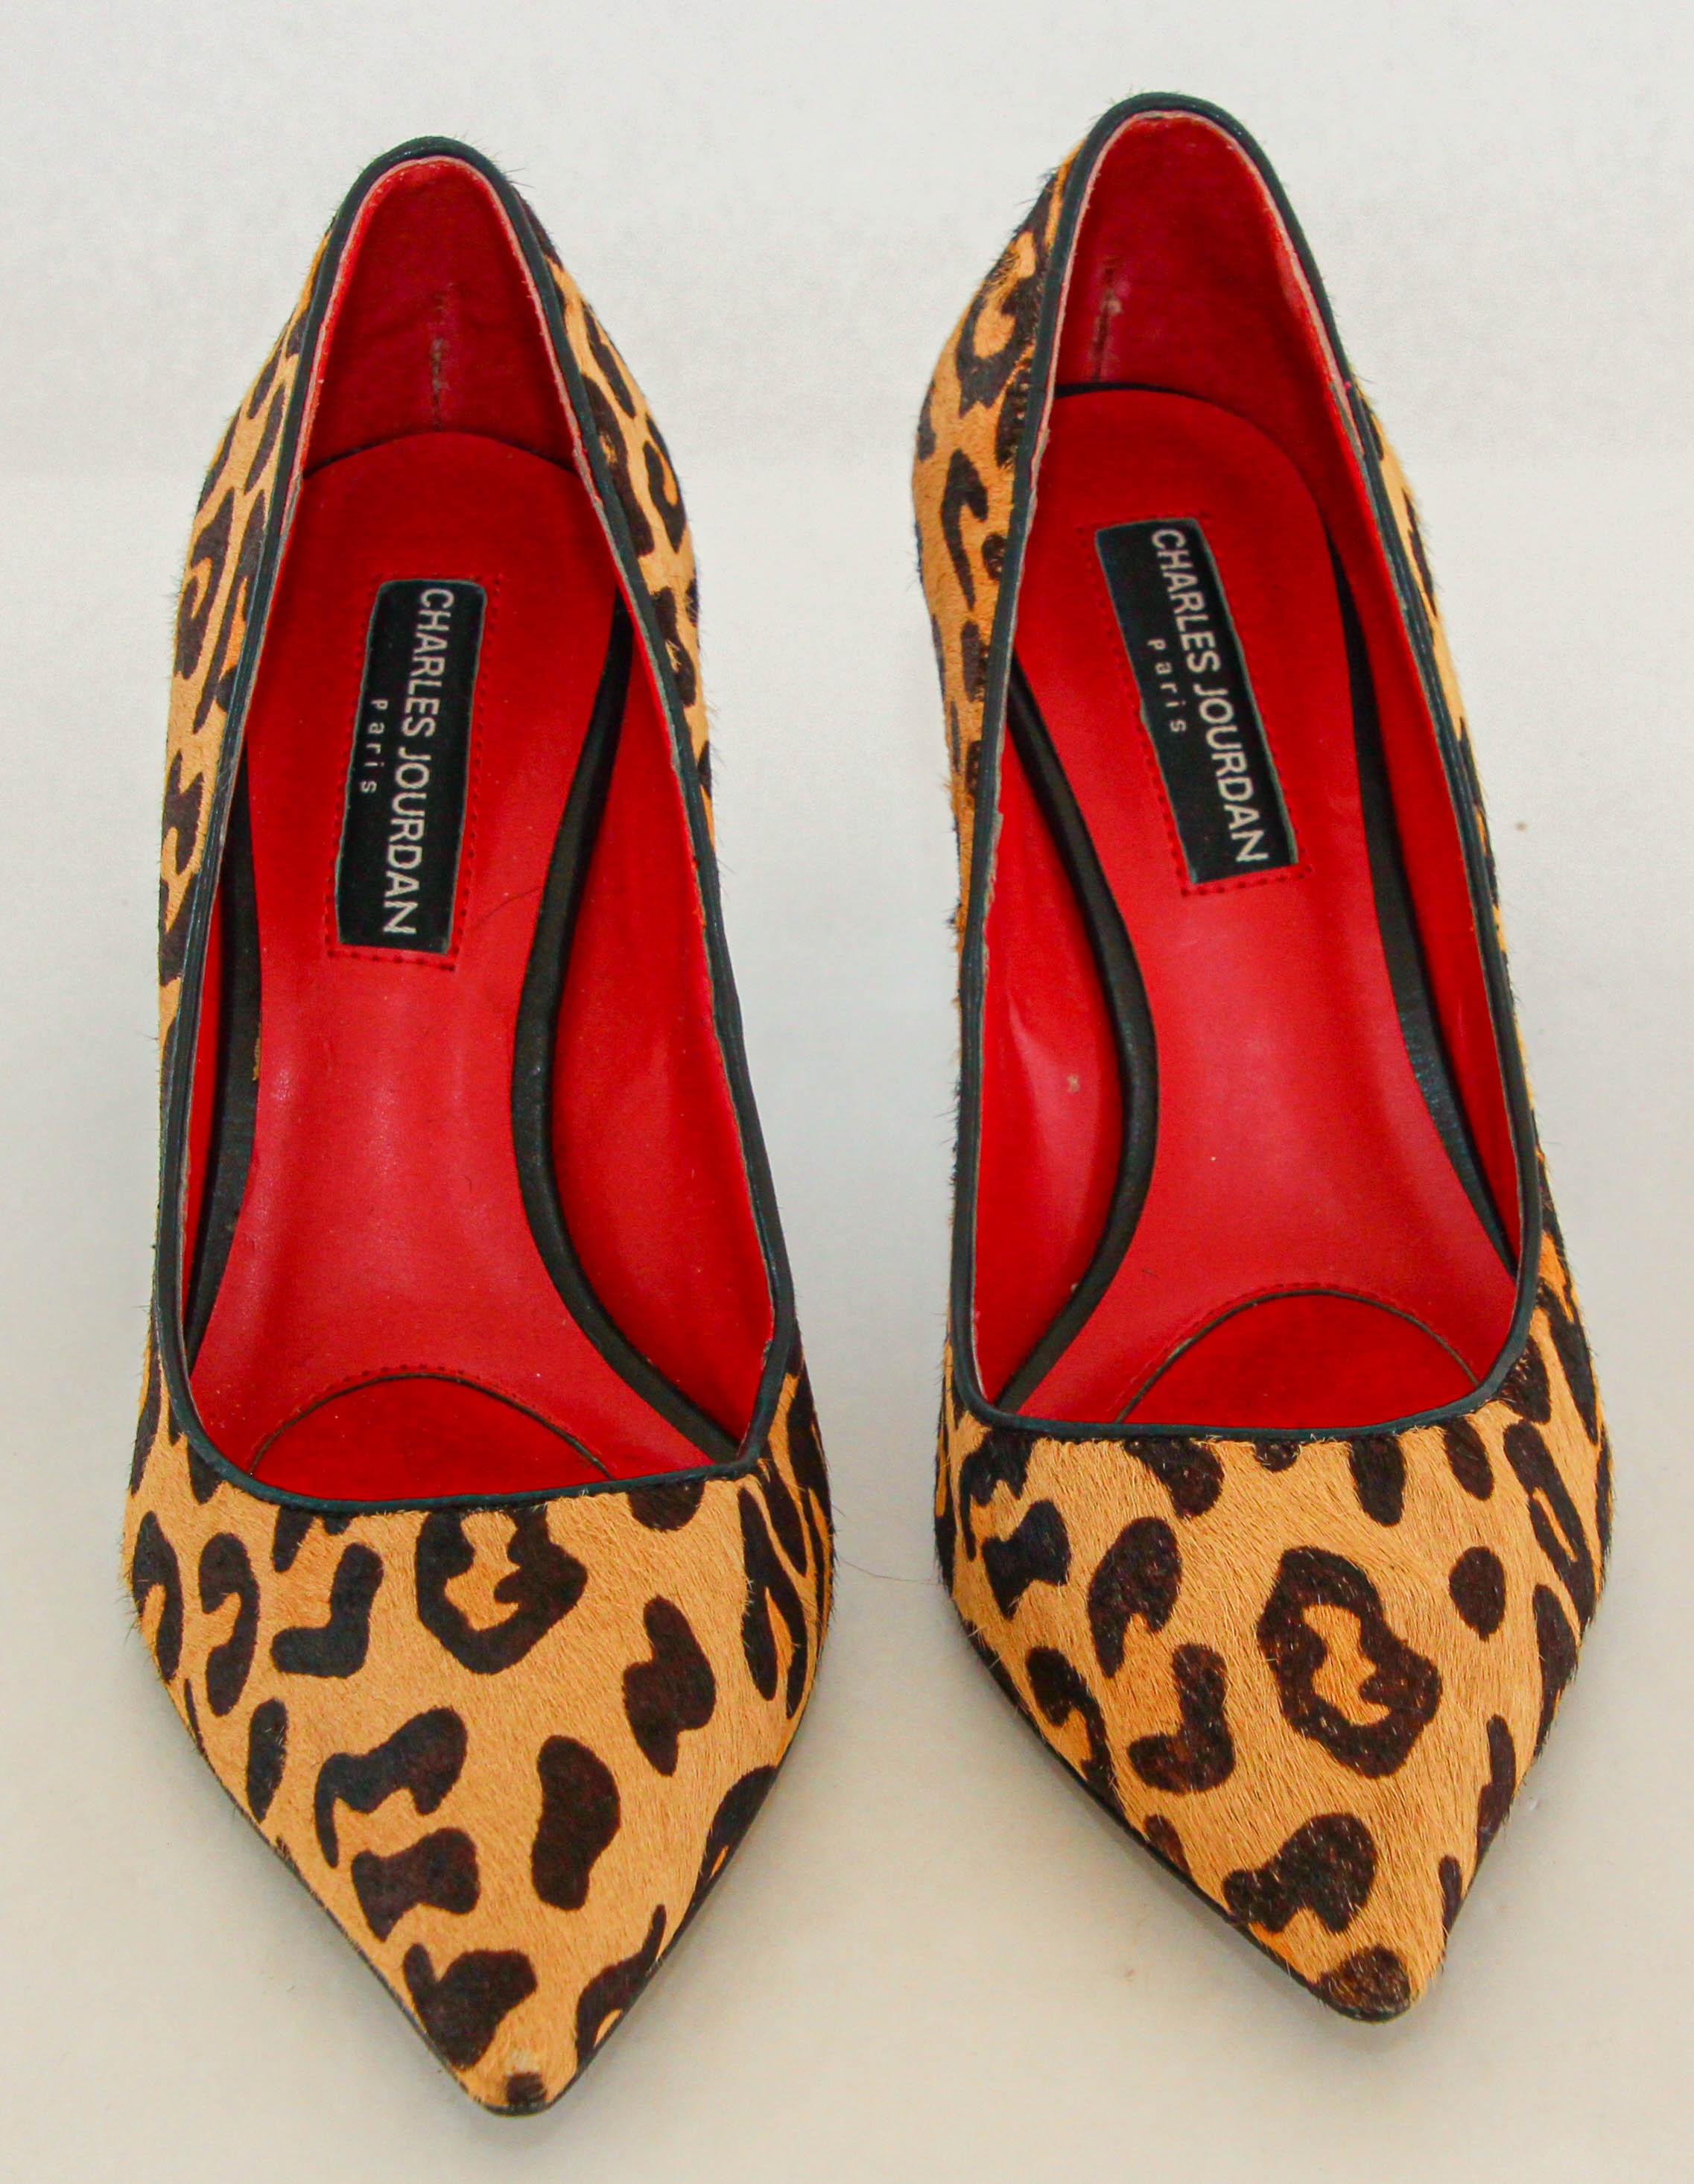 Charles Jourdan Paris Leopard Print Pony Hair heels Pumps.
Marked Charles Jourdan Paris, made in France.
Animal print leopard heels
Leopard Print Pony Hair heels Pumps.
HEEL: 2. 3/4